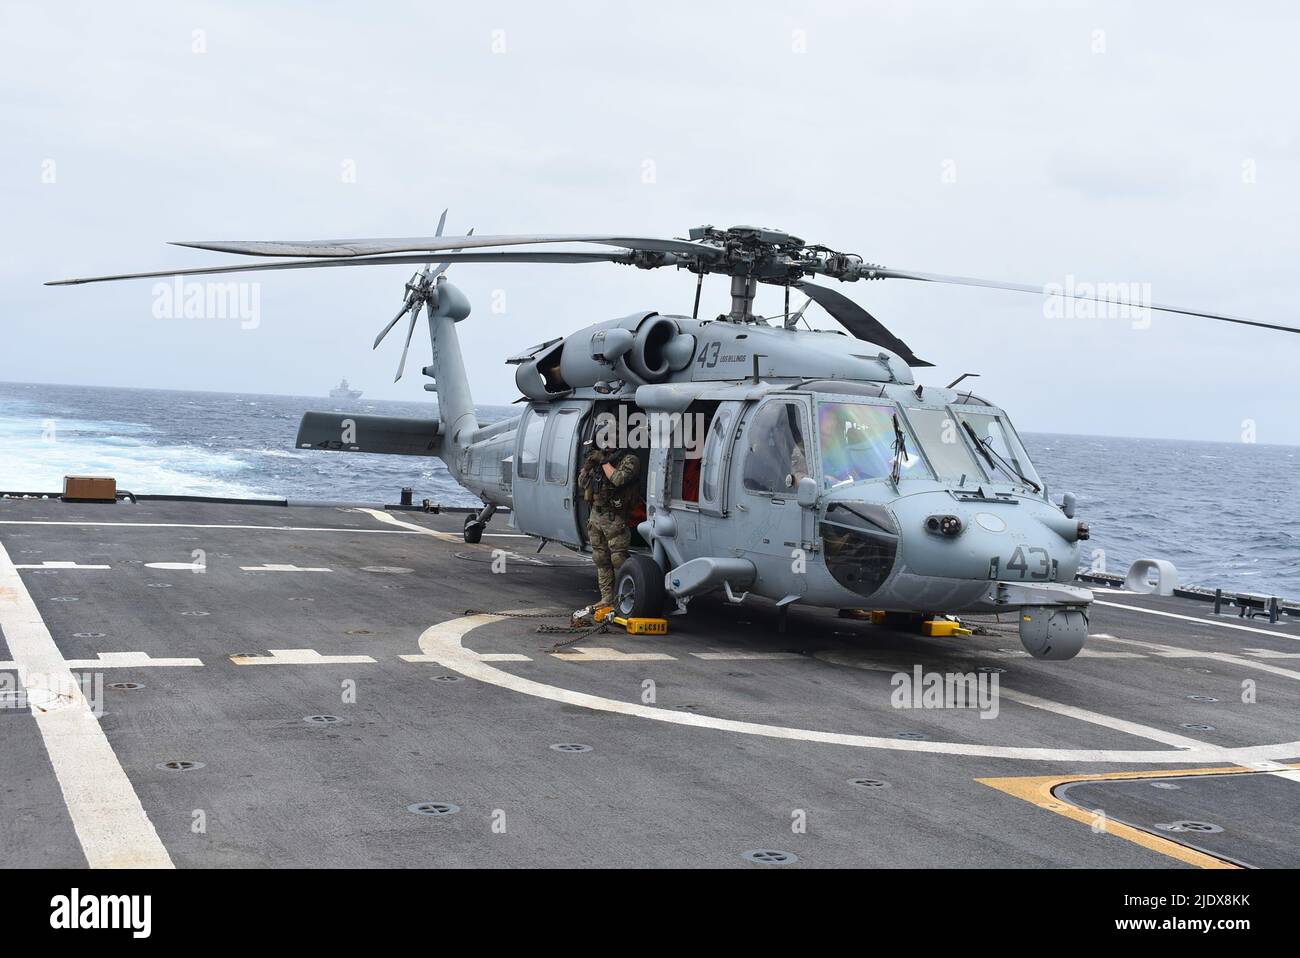 220615-N-N3764-1004 AIRCREWMAN (hélicoptère) naval DE LA MER DES CARAÏBES (15 juin 2022) 1st la cellule Benjamin de classe, affectée à l'Escadron de combat de la mer (HSC) 28, effectue un contrôle en amont du treuil de levage sur un hélicoptère MH-60s Sea Hawk pendant les trimestres de vol à bord du navire de combat littoral Freedom-variant USS Billings (LCS 15), À l'appui de l'exercice Caraibes 2022, 15 juin 2022. Caraibes 2022 est un exercice d'entraînement commun, combiné et mené par les Français dans les Caraïbes, qui implique des ressources navales, aériennes et terrestres. Cet exercice multinational vise à promouvoir la coopération entre les forces régionales et les thei Banque D'Images